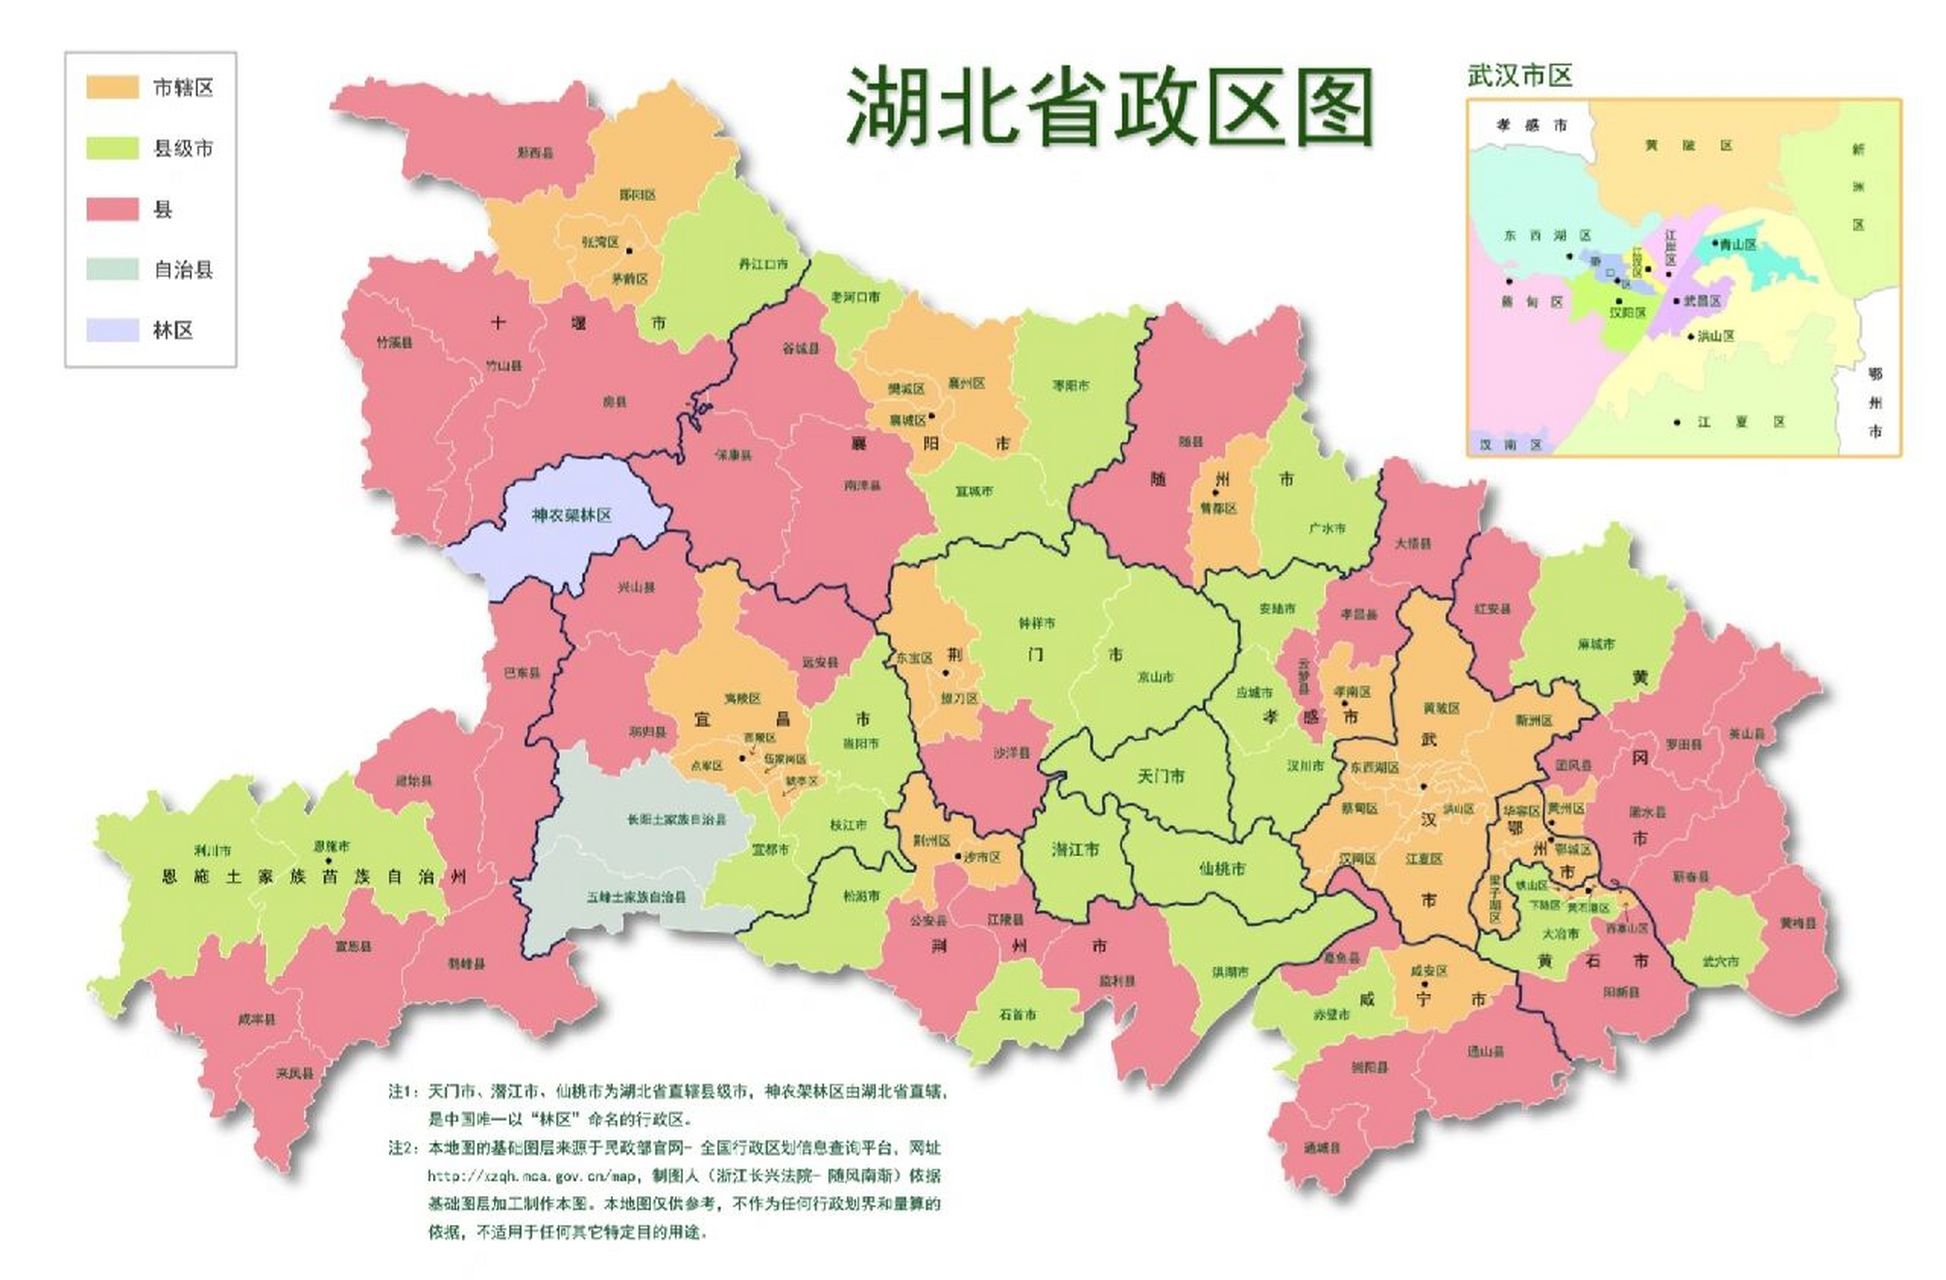 湖北政区图 湖北省,位于中国中部偏南,长江中游,洞庭湖以北,故名湖北